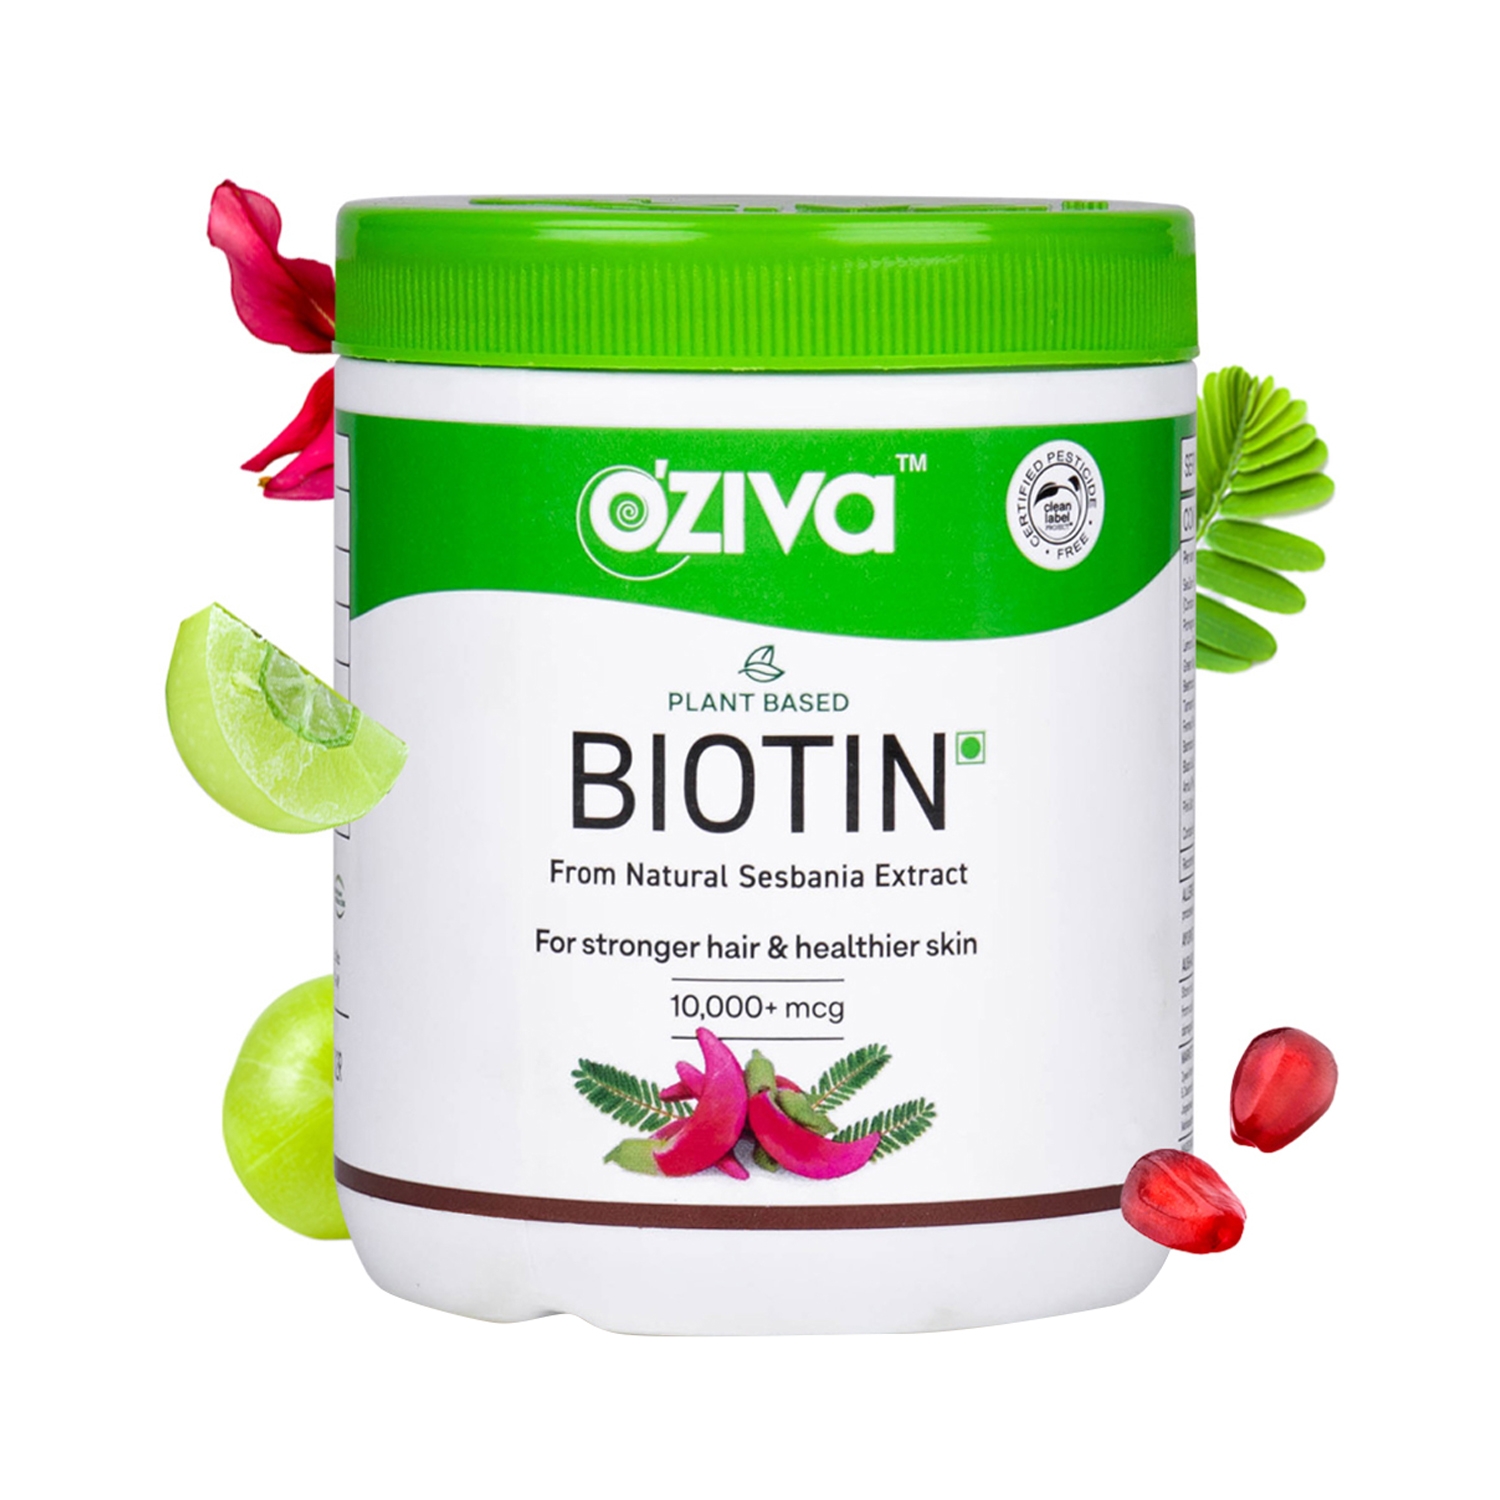 Oziva | Oziva Plant Based Biotin 10000+ mcg Powder (125g)